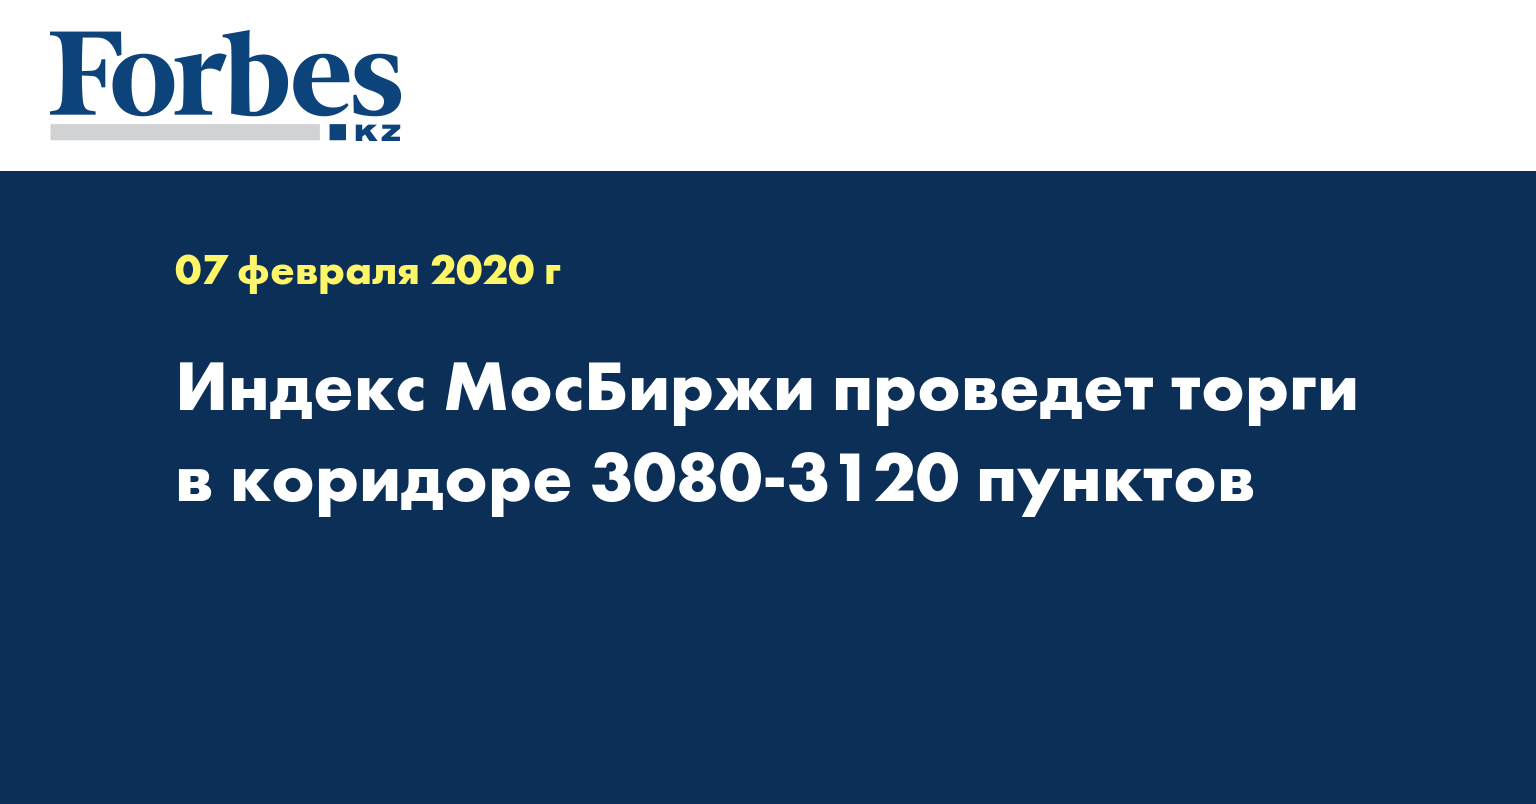 Индекс МосБиржи проведет торги в коридоре 3080-3120 пунктов